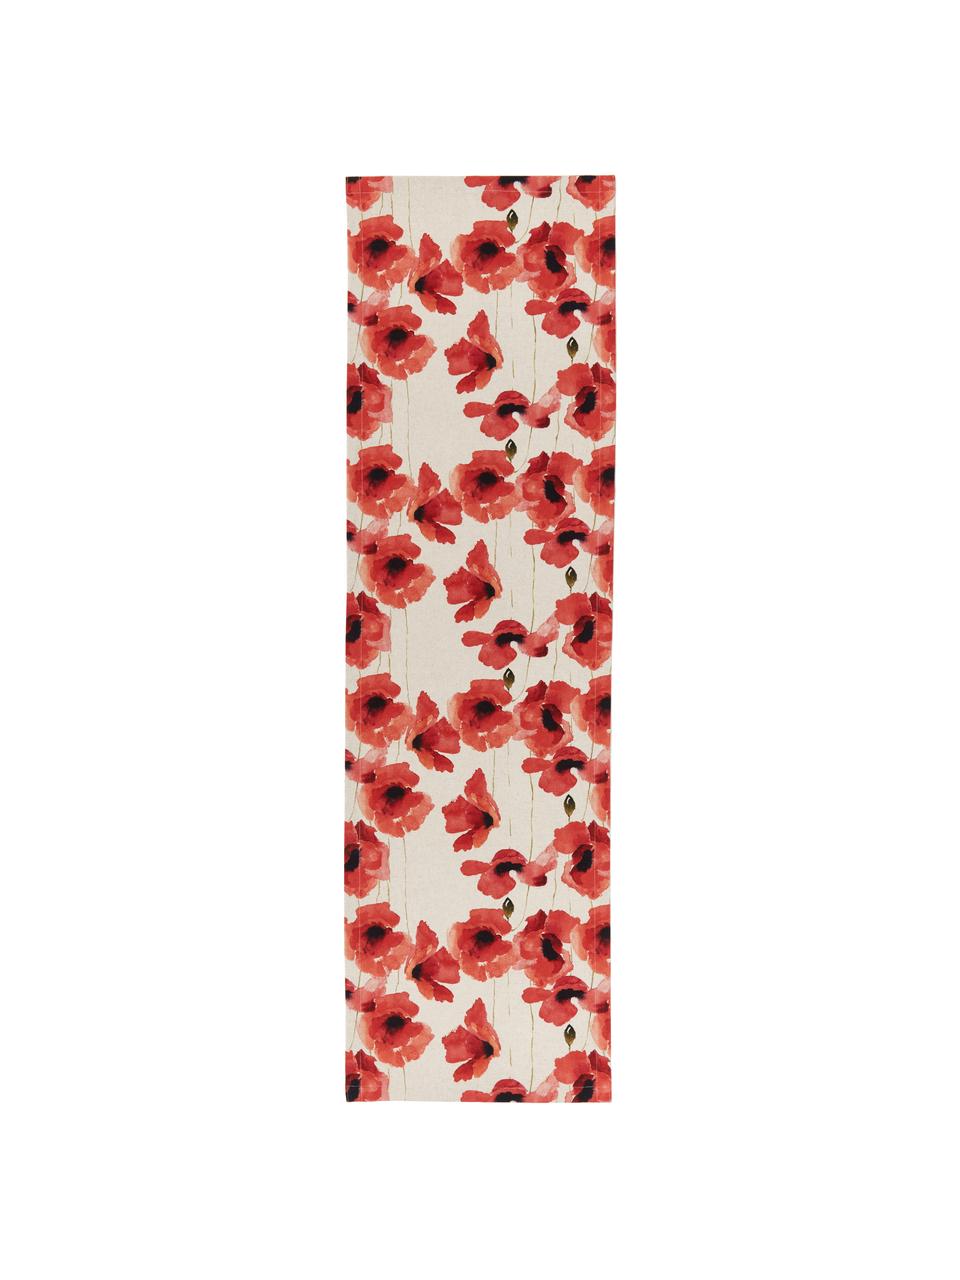 Tafelloper Popy met klaprozen, 85% katoen, 15% linnen, Beige, rood, zwart, patroon, B 40 x L 145 cm